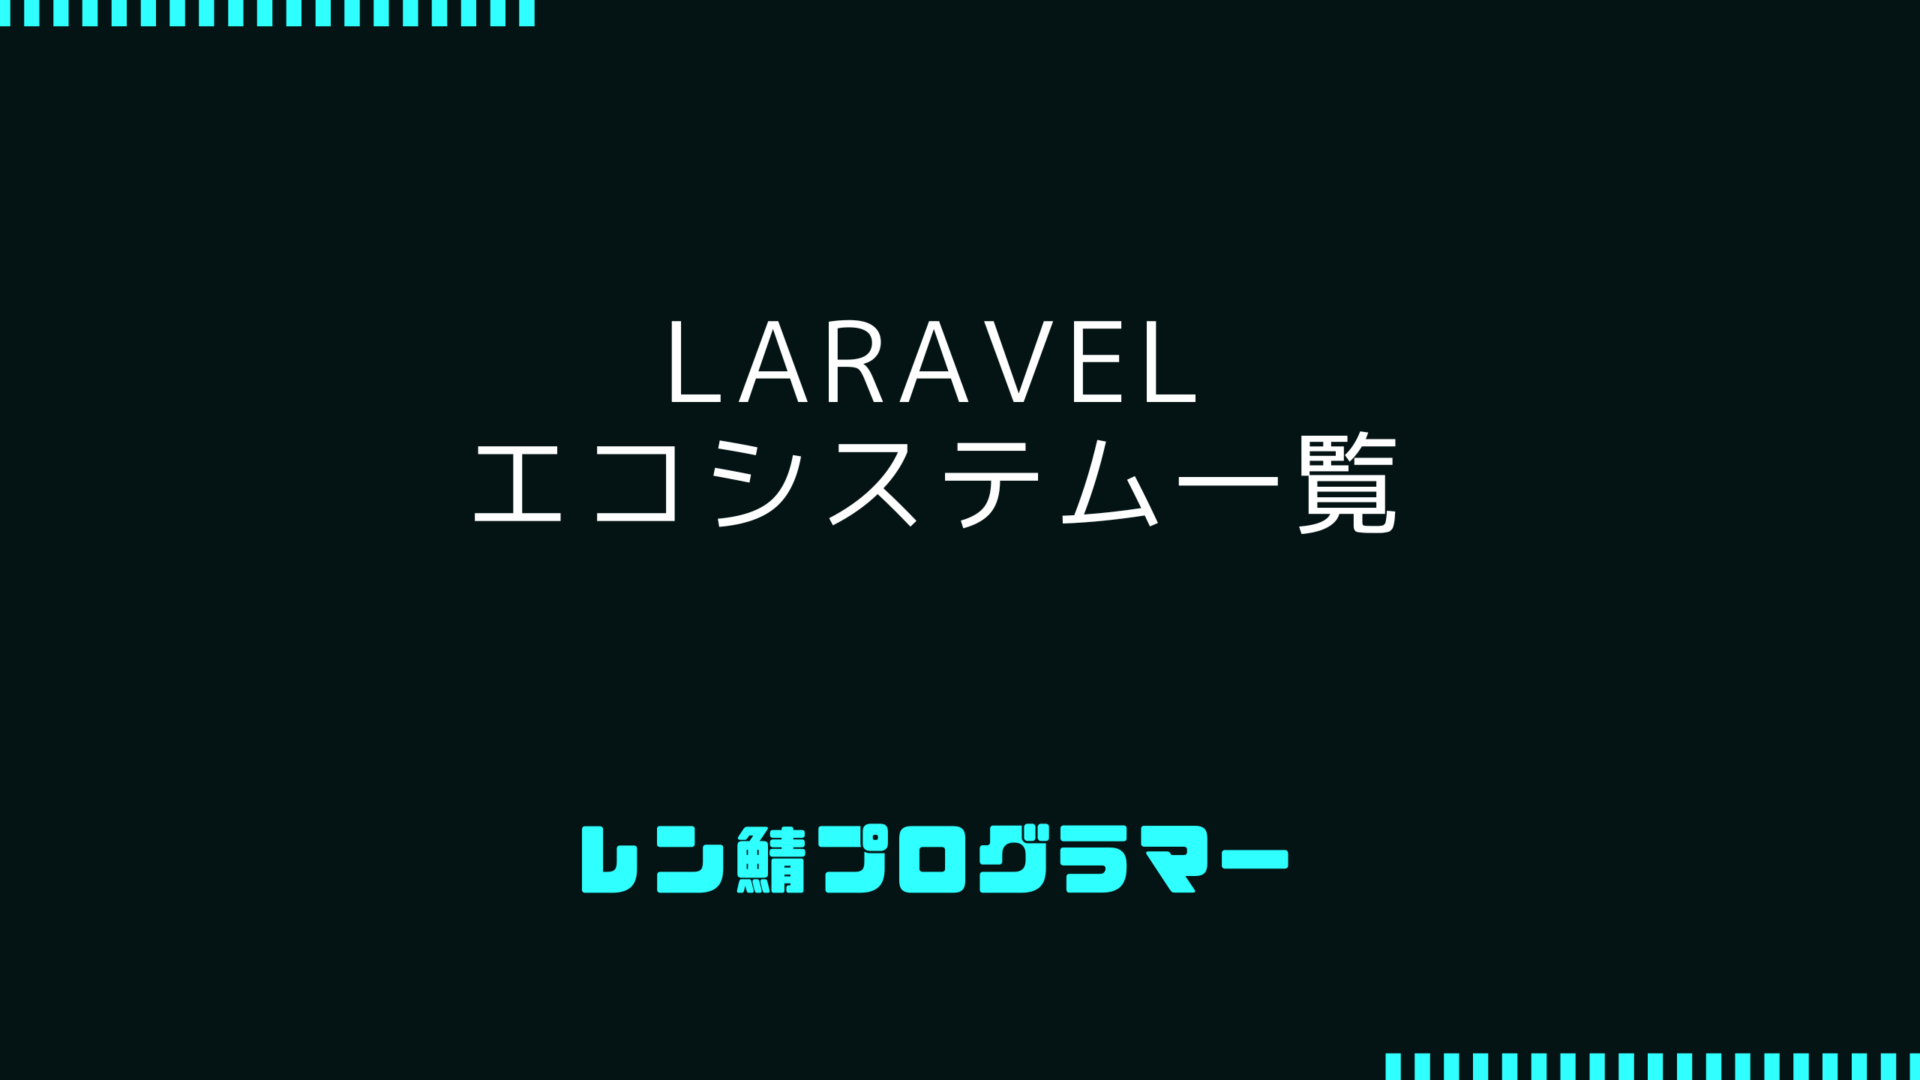 Laravel公式のエコシステムやパッケージを一覧でまとめてみる